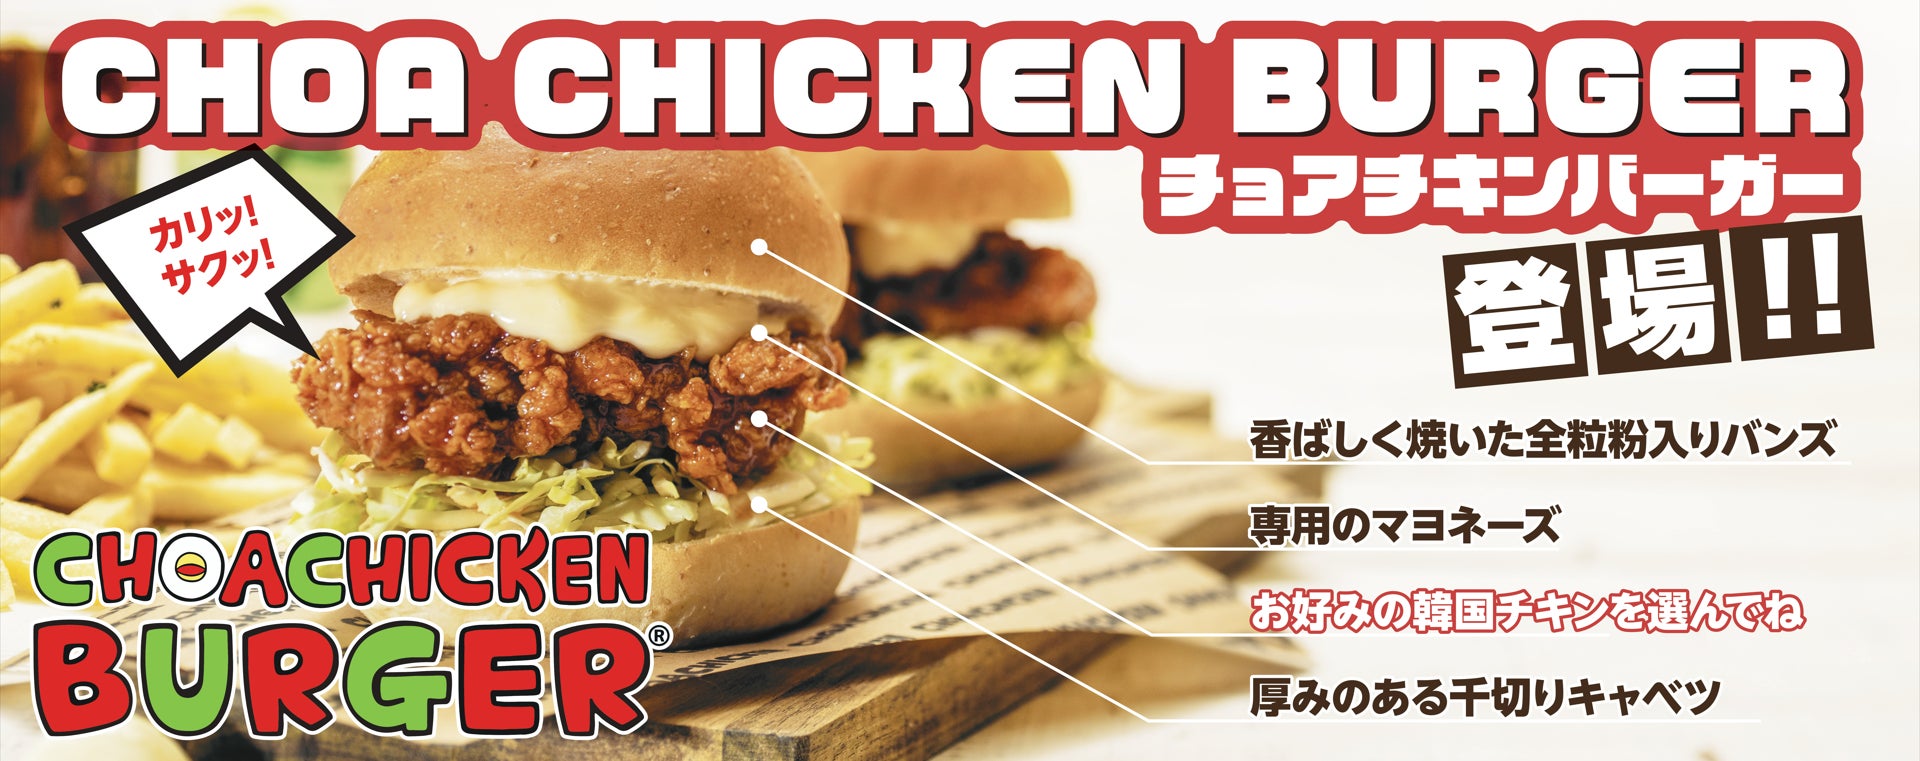 【“音メシ系”チキンバーガー】チョアチキンバーガー7/13全国発売開始